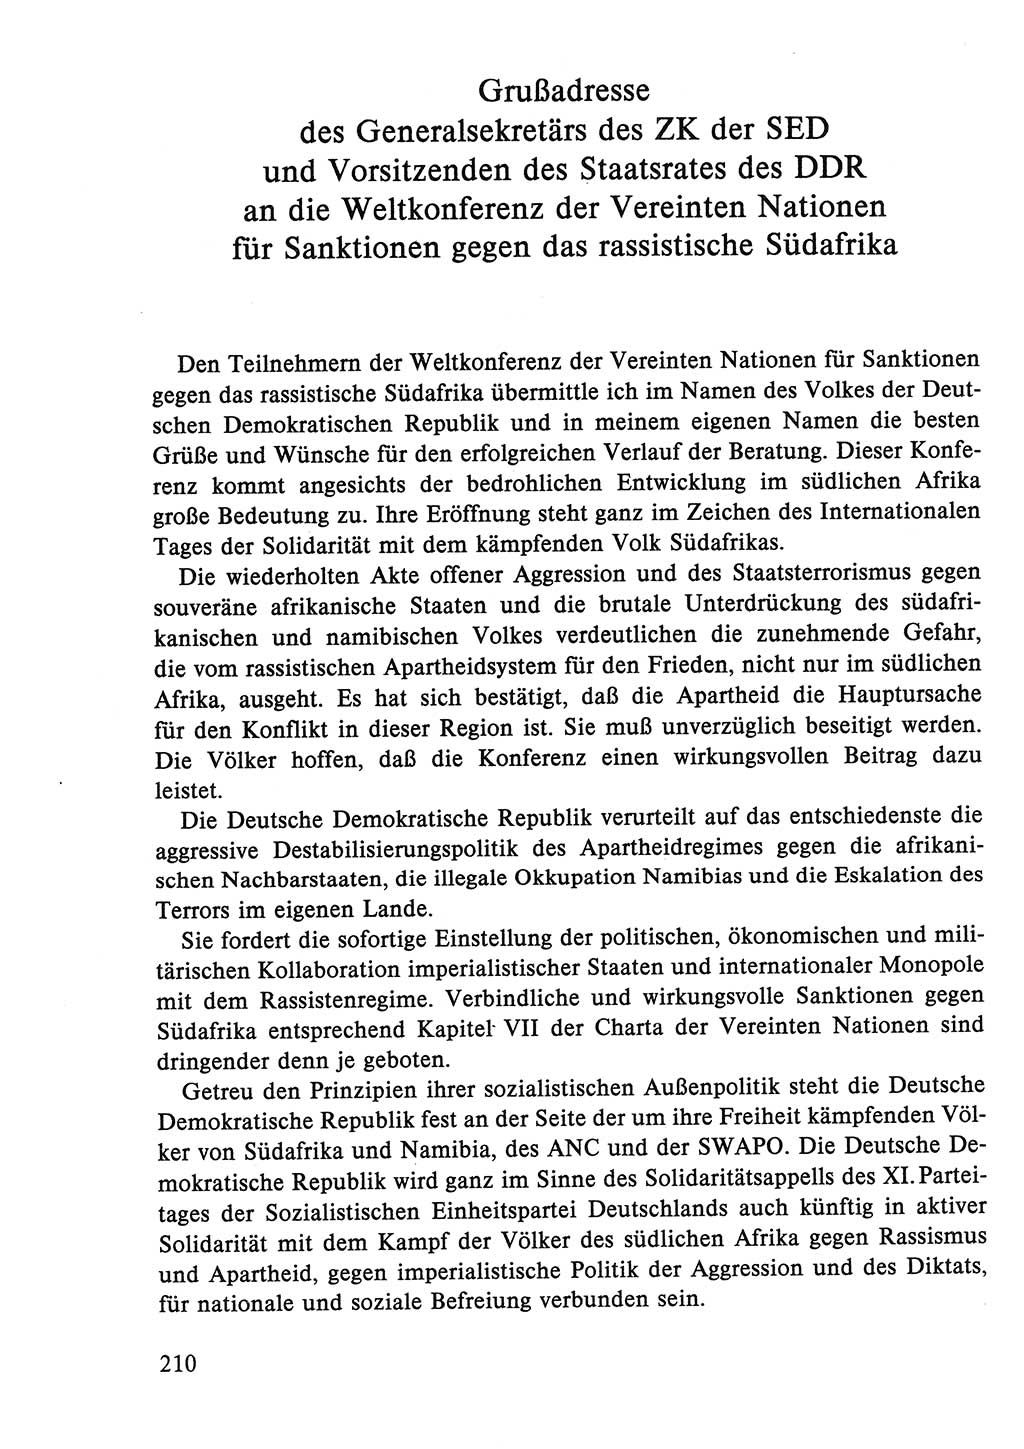 Dokumente der Sozialistischen Einheitspartei Deutschlands (SED) [Deutsche Demokratische Republik (DDR)] 1986-1987, Seite 210 (Dok. SED DDR 1986-1987, S. 210)